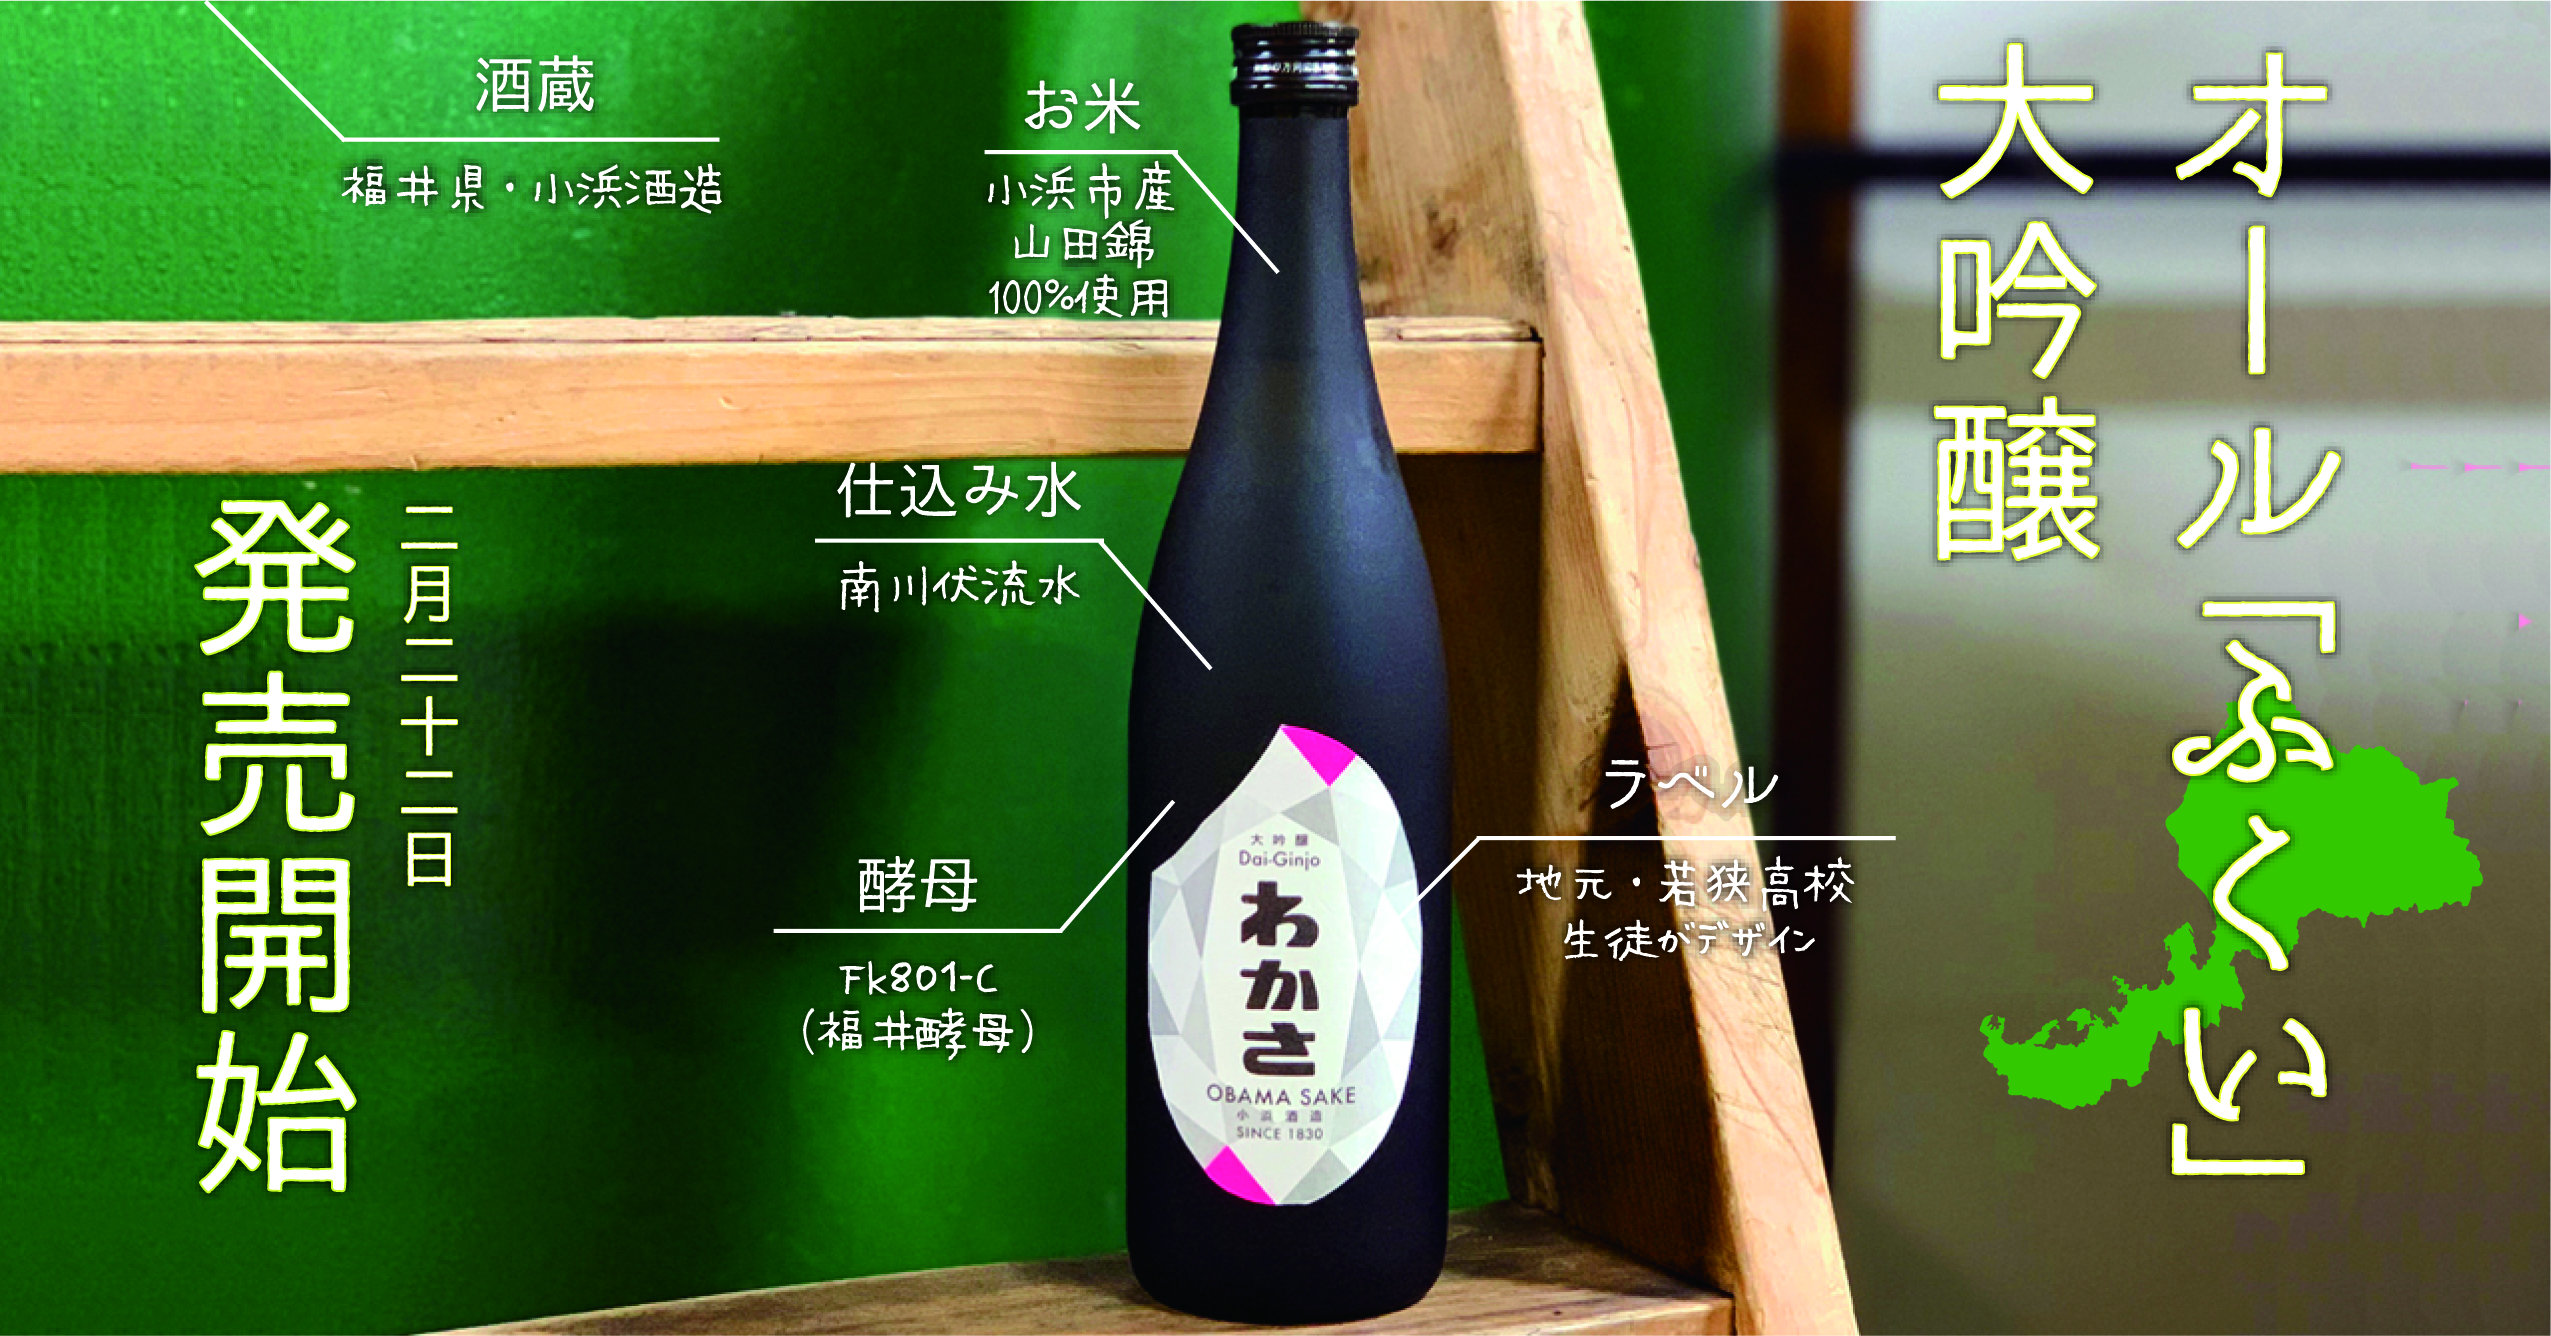 新進気鋭の酒蔵が醸す、“オール福井産”大吟醸酒「大吟醸わかさ」を２月より発売開始